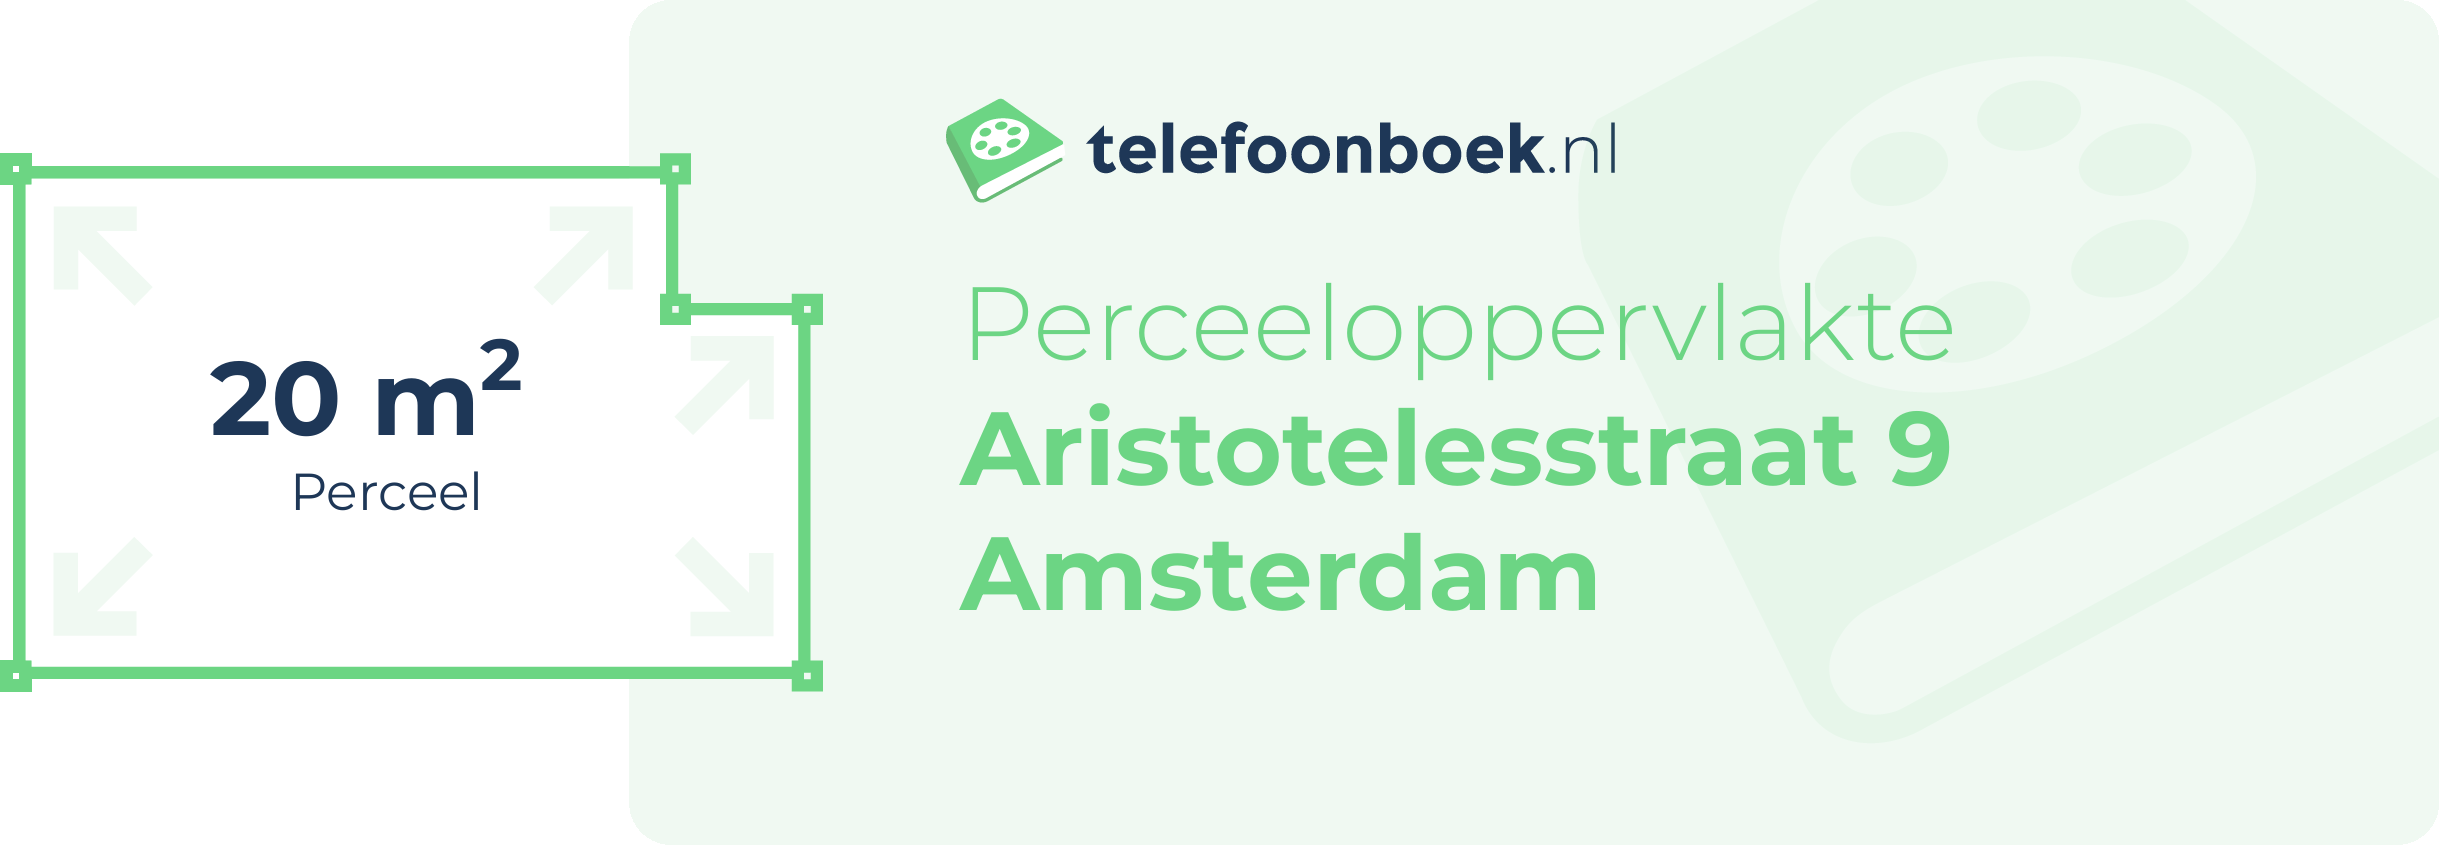 Perceeloppervlakte Aristotelesstraat 9 Amsterdam